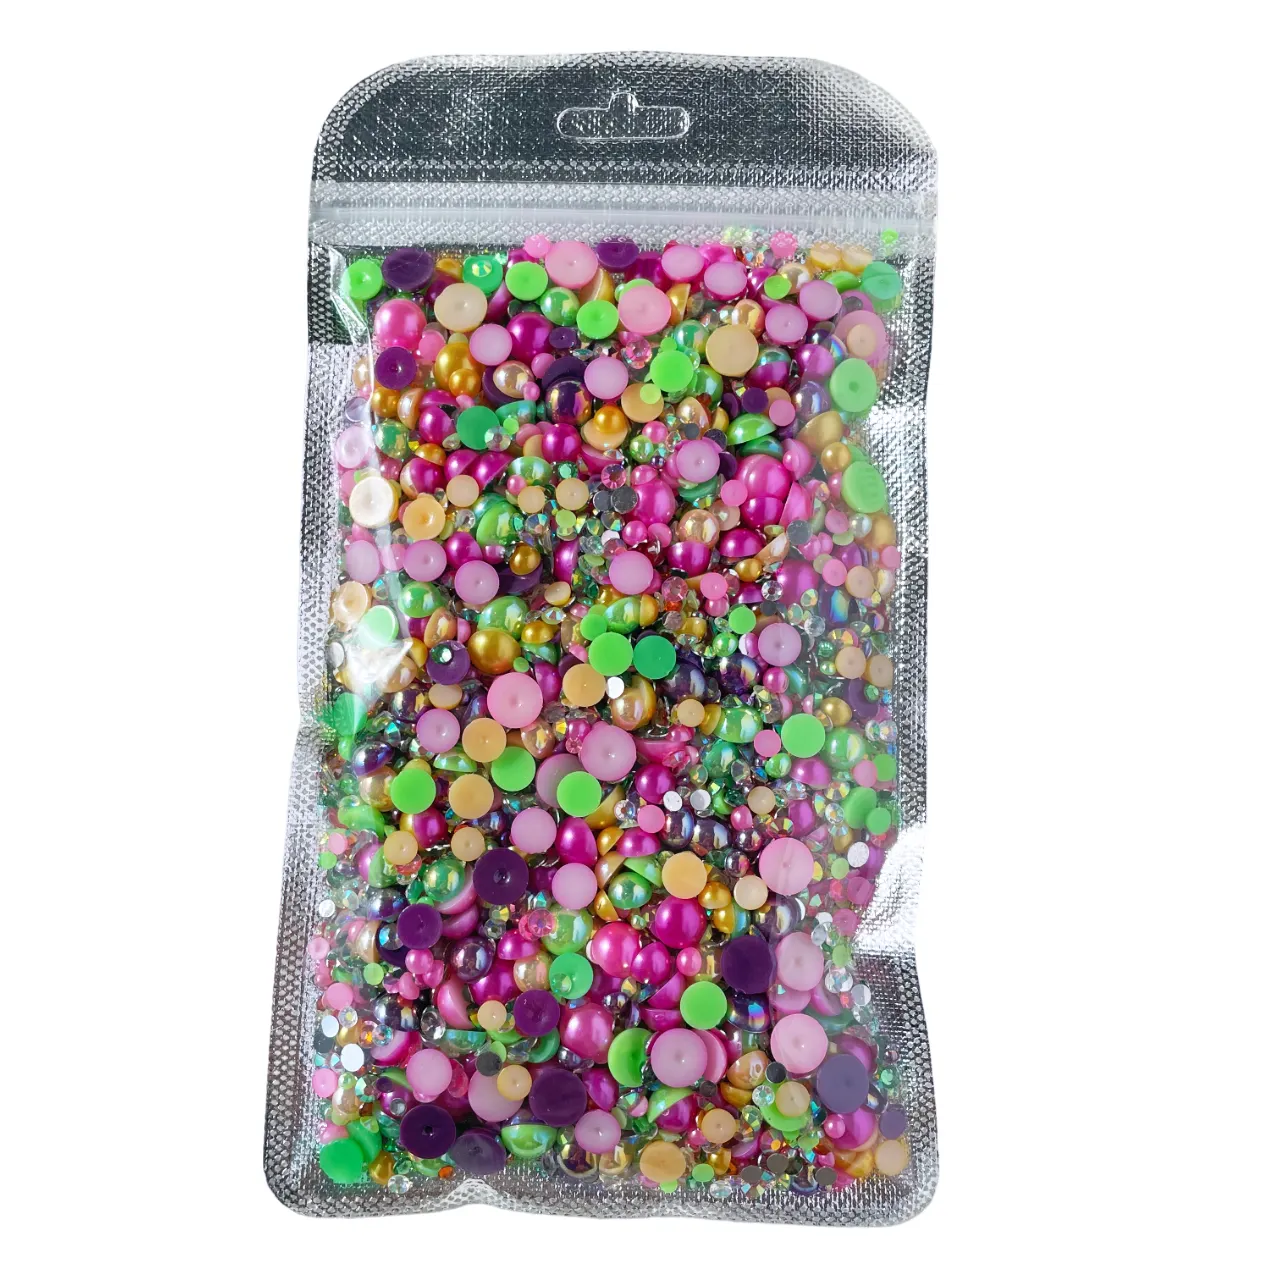 Fabrik Großhandel Mischgröße 150 g/Beutel neue Farben flache Rückseite Perlen und Strasssteine Mischung ABS halb runde Perle